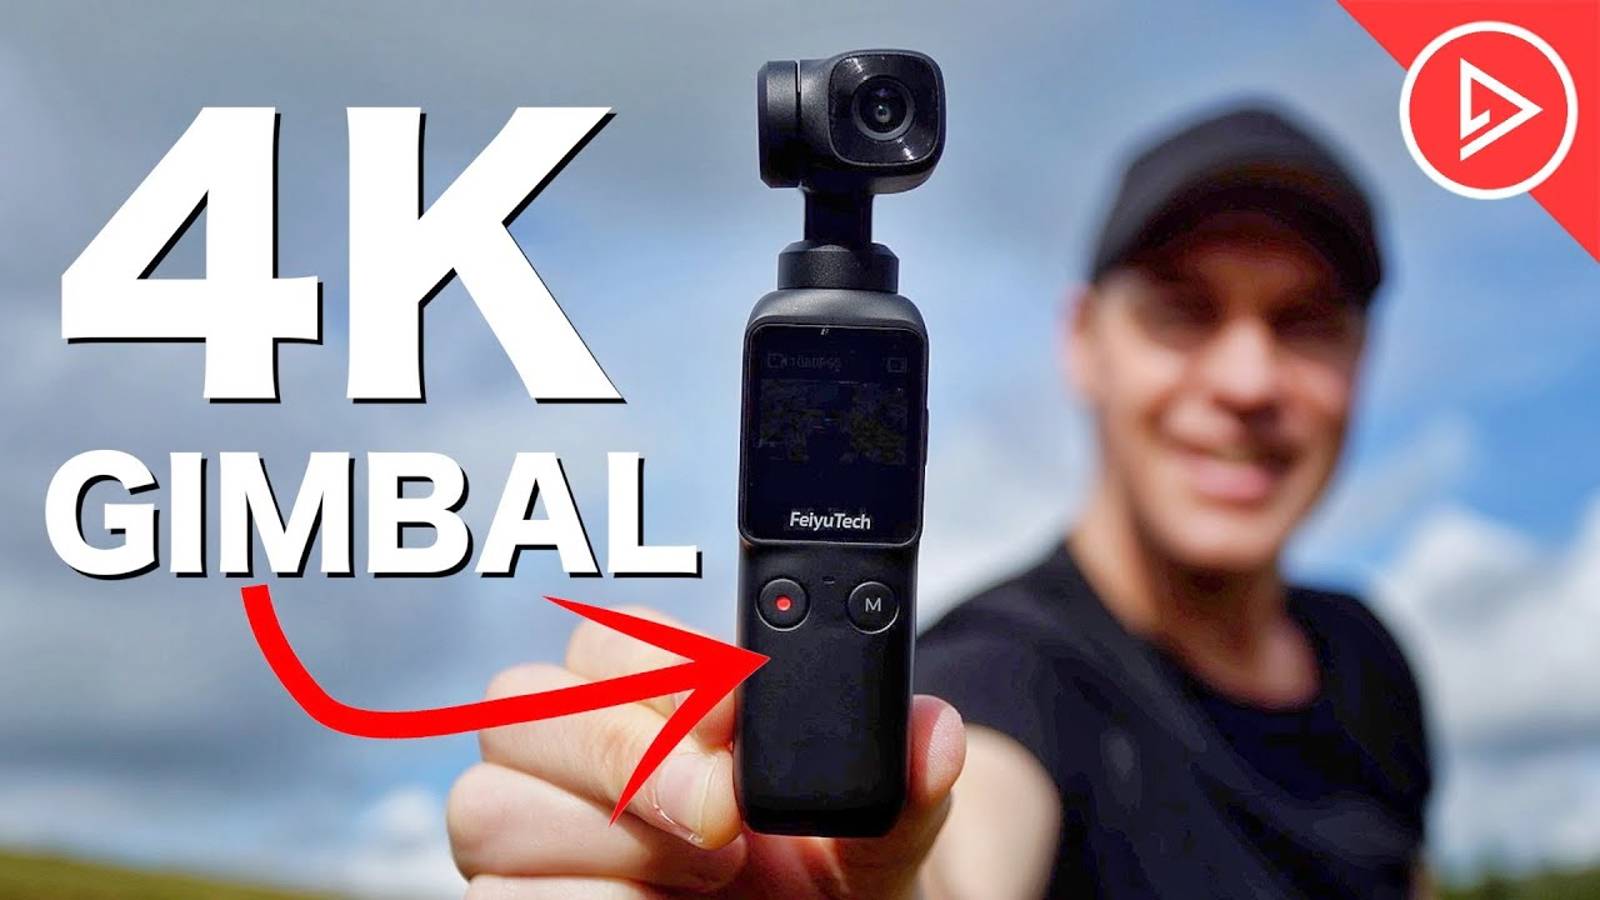 Карманная камера 4K с подвесом за 250 долларов
Насколько плавно снято видео?